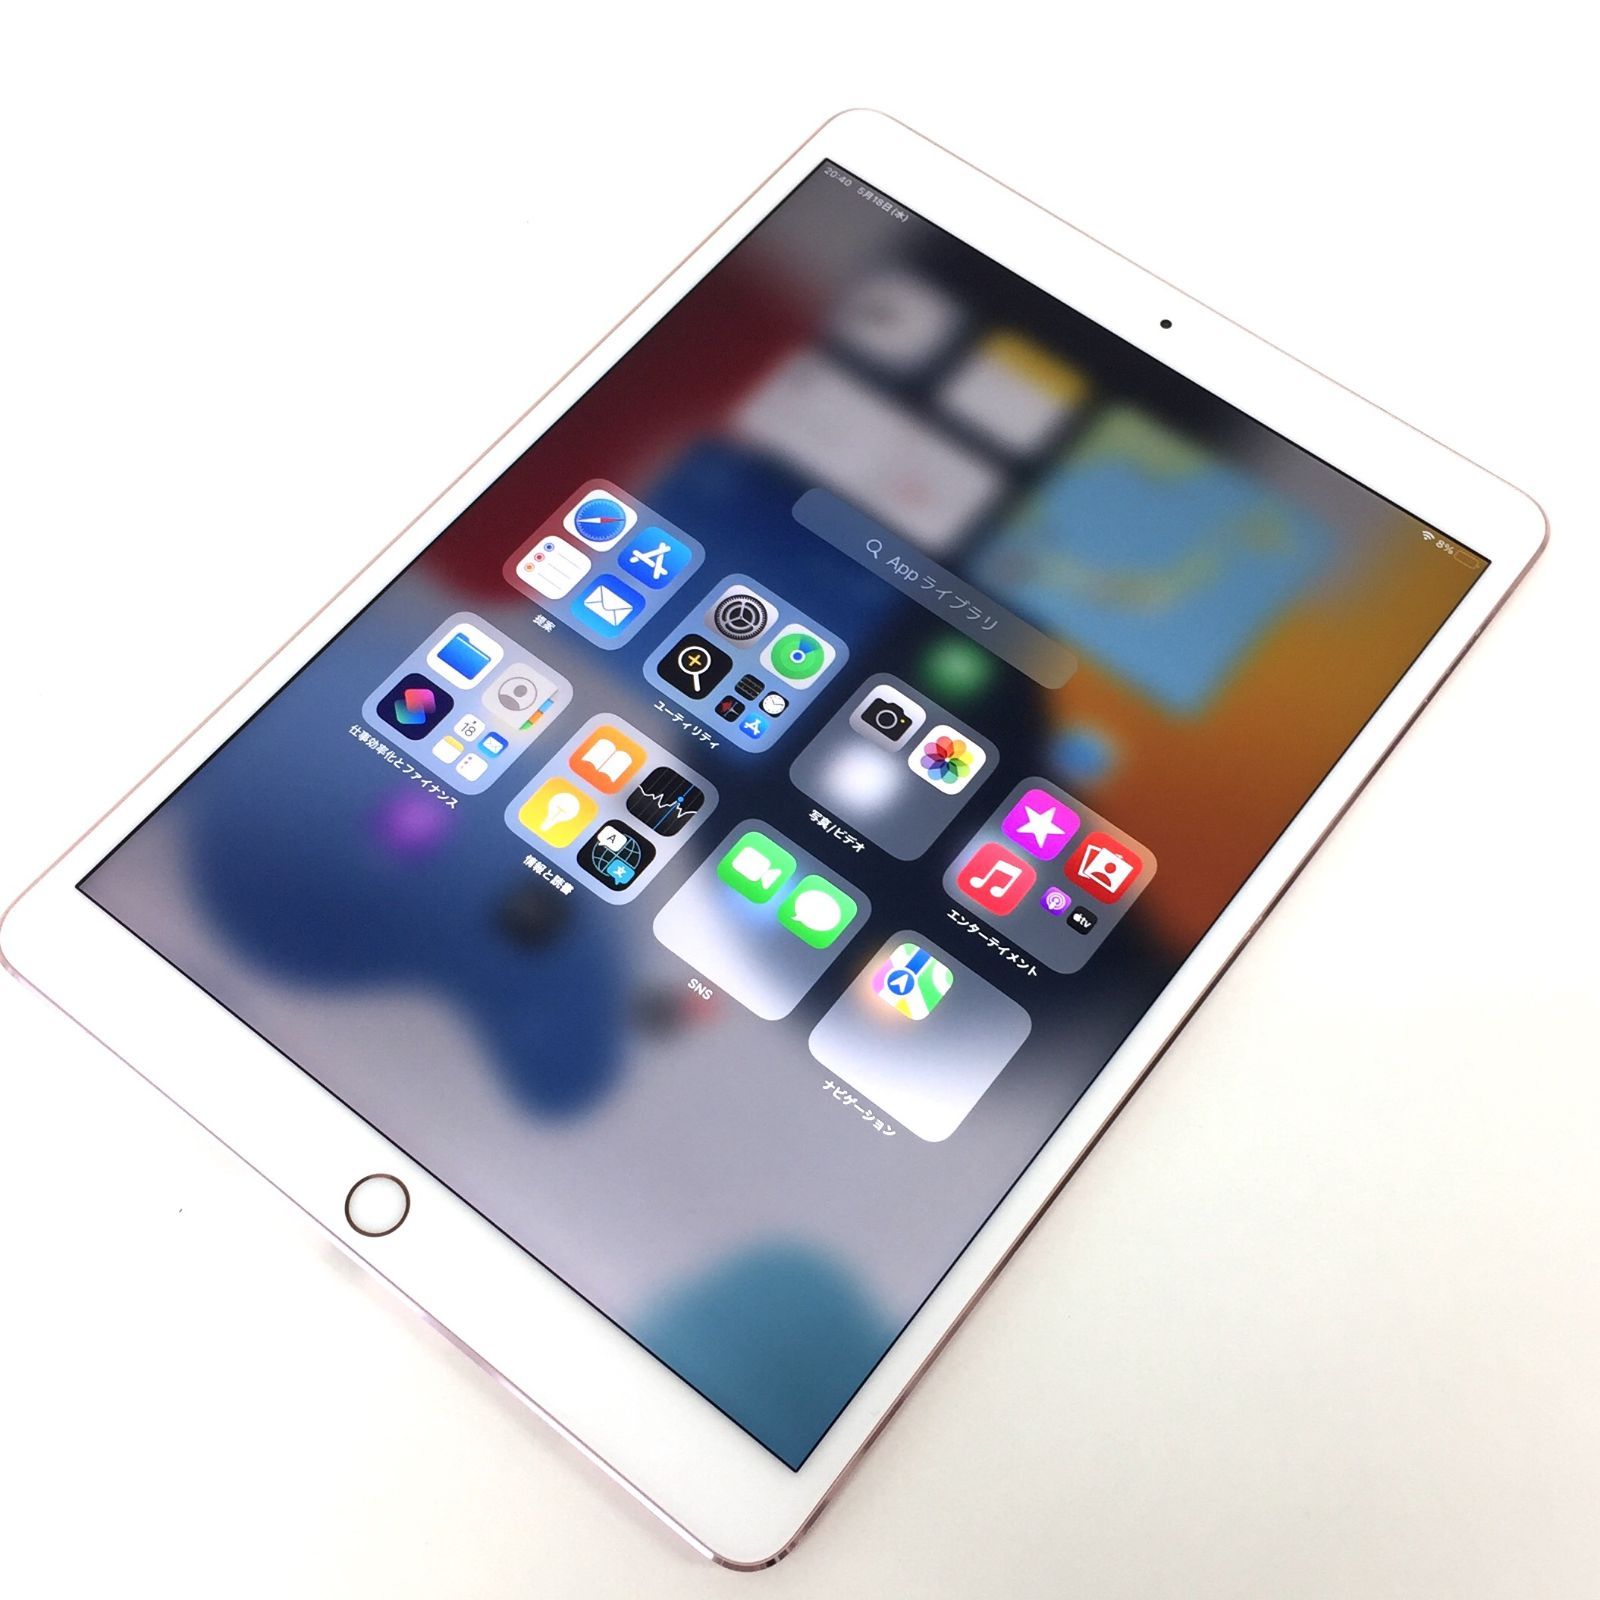 θ iPad Pro 10.5インチ Wi-Fiモデル 64GB ローズゴールド - メルカリ